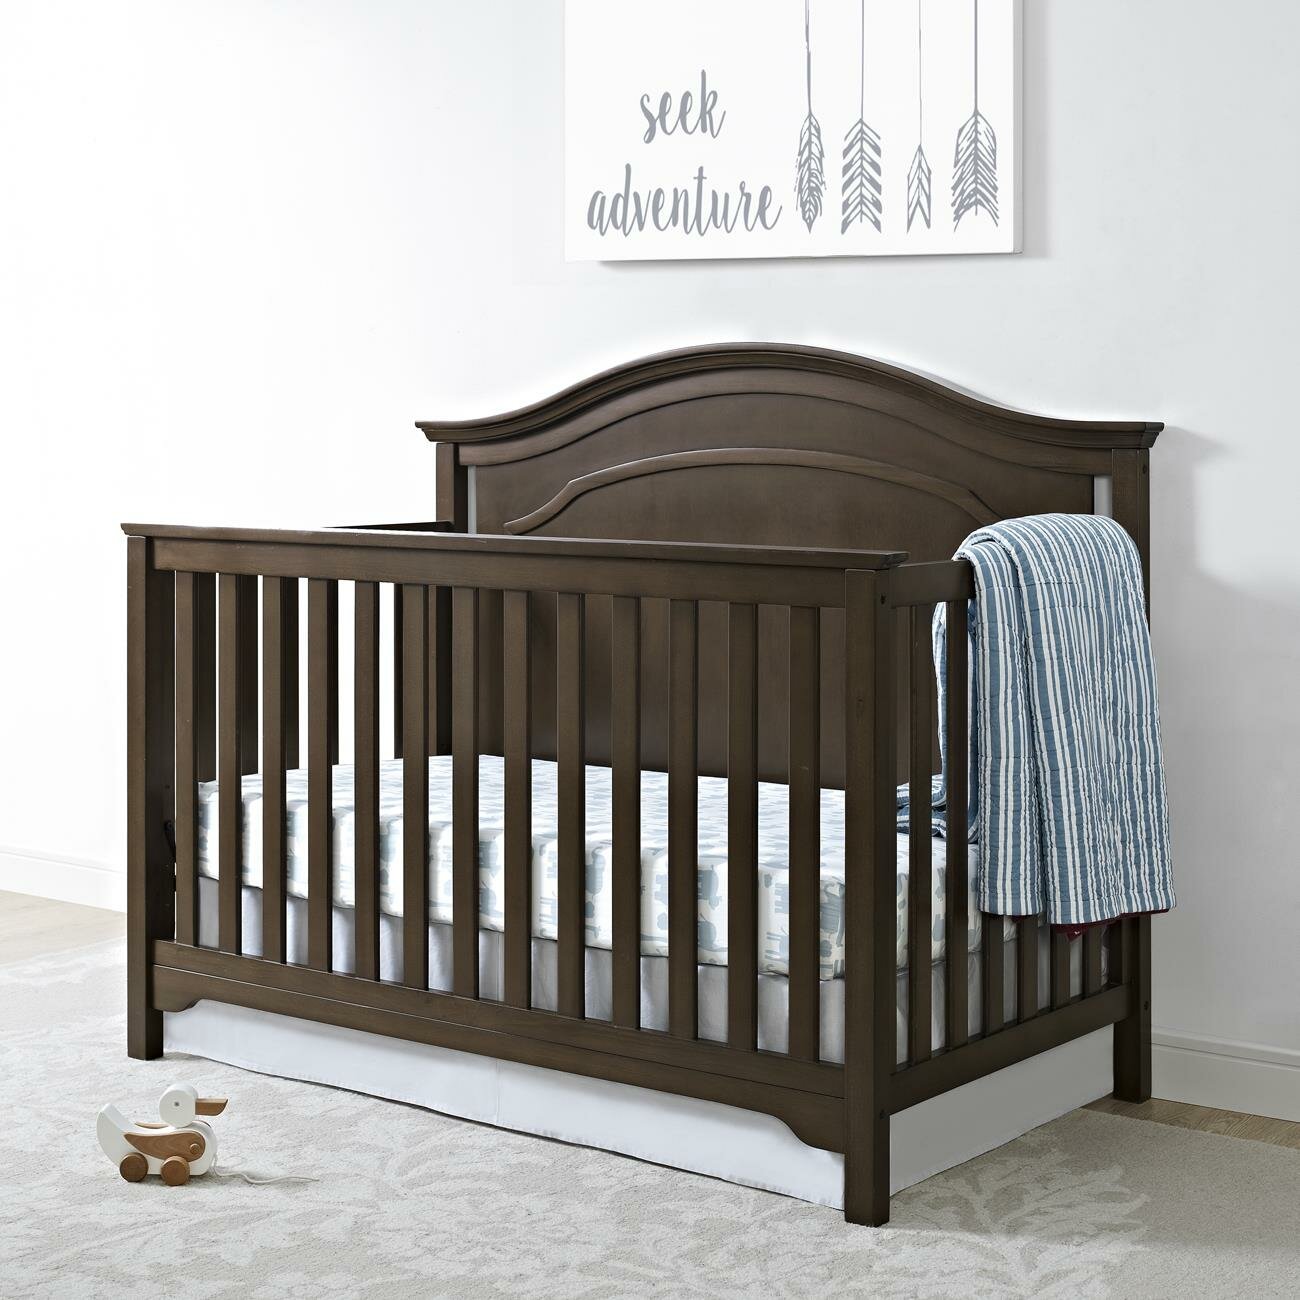 Baby Relax Eddie Bauer Hayworth 4-in-1 Convertible Crib ...